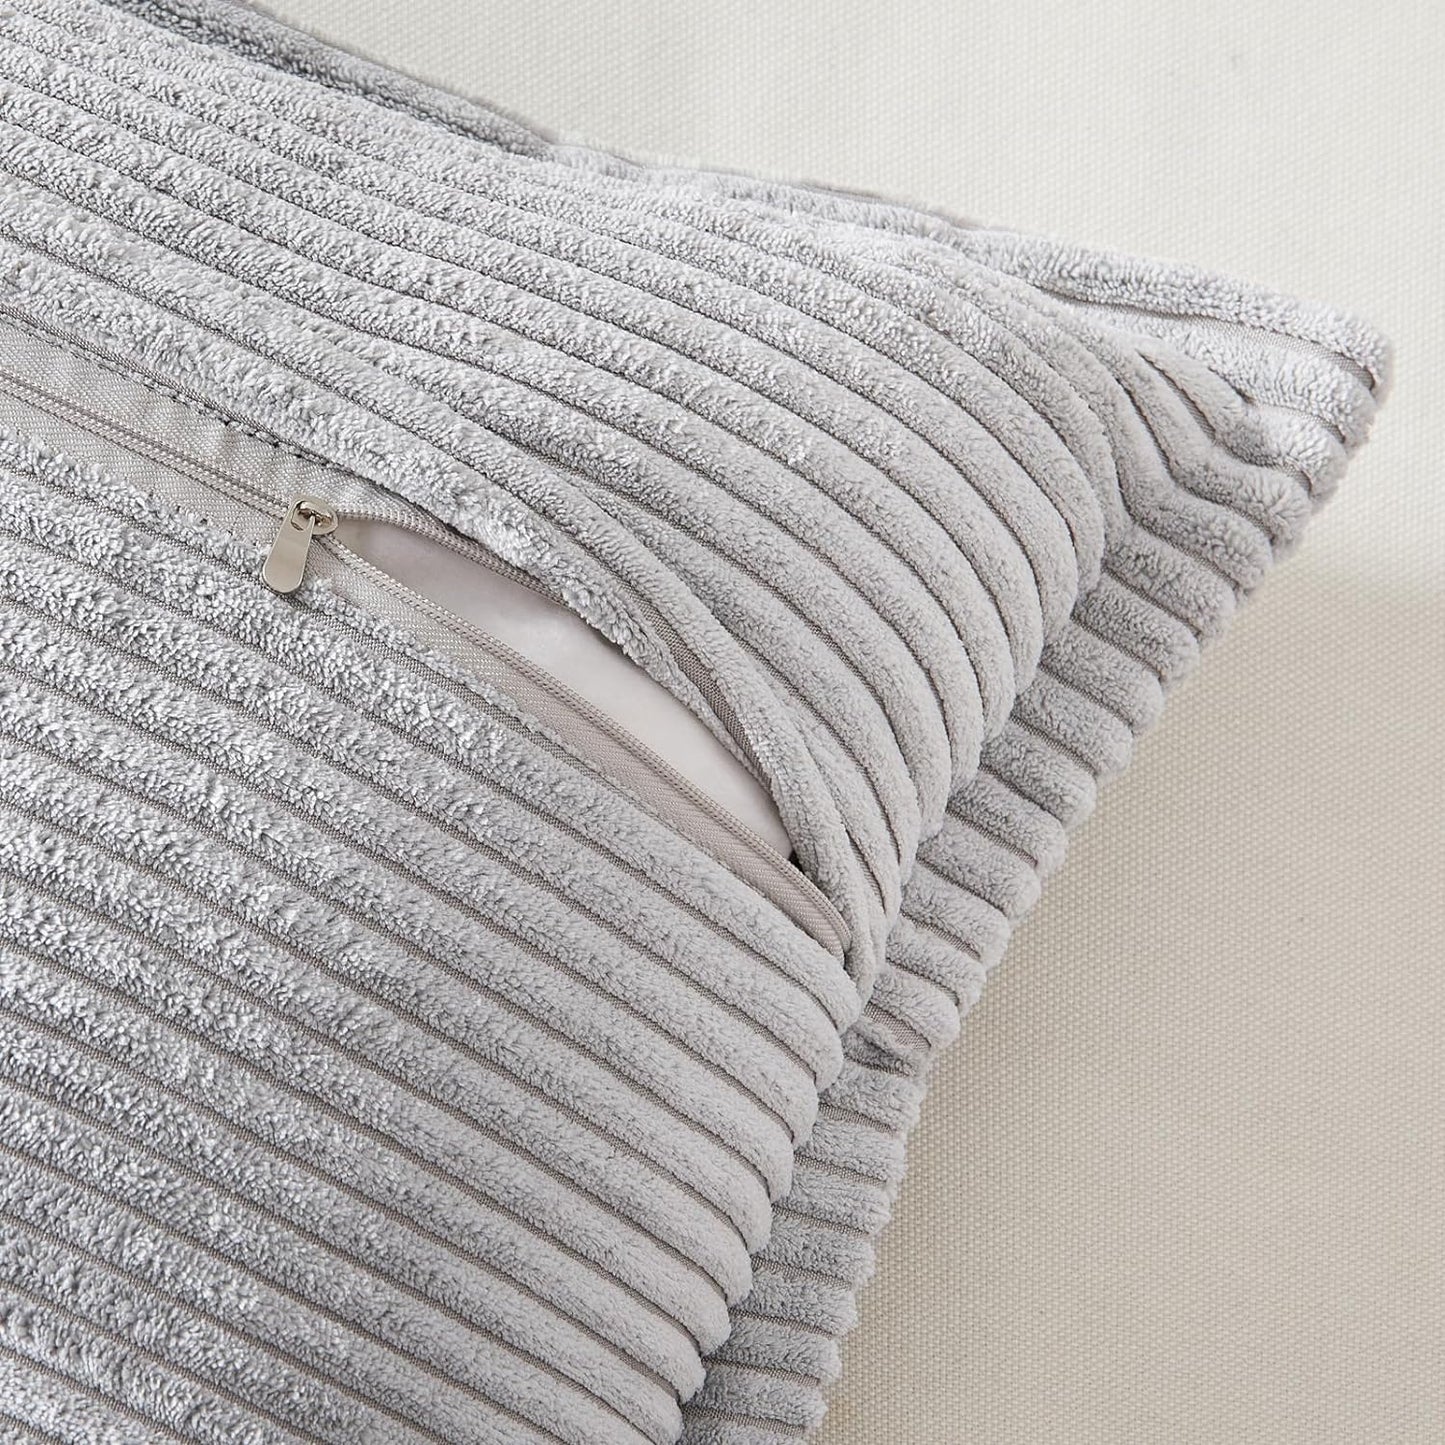 Corduroy Striped Throw Pillow Covers | Boho Style